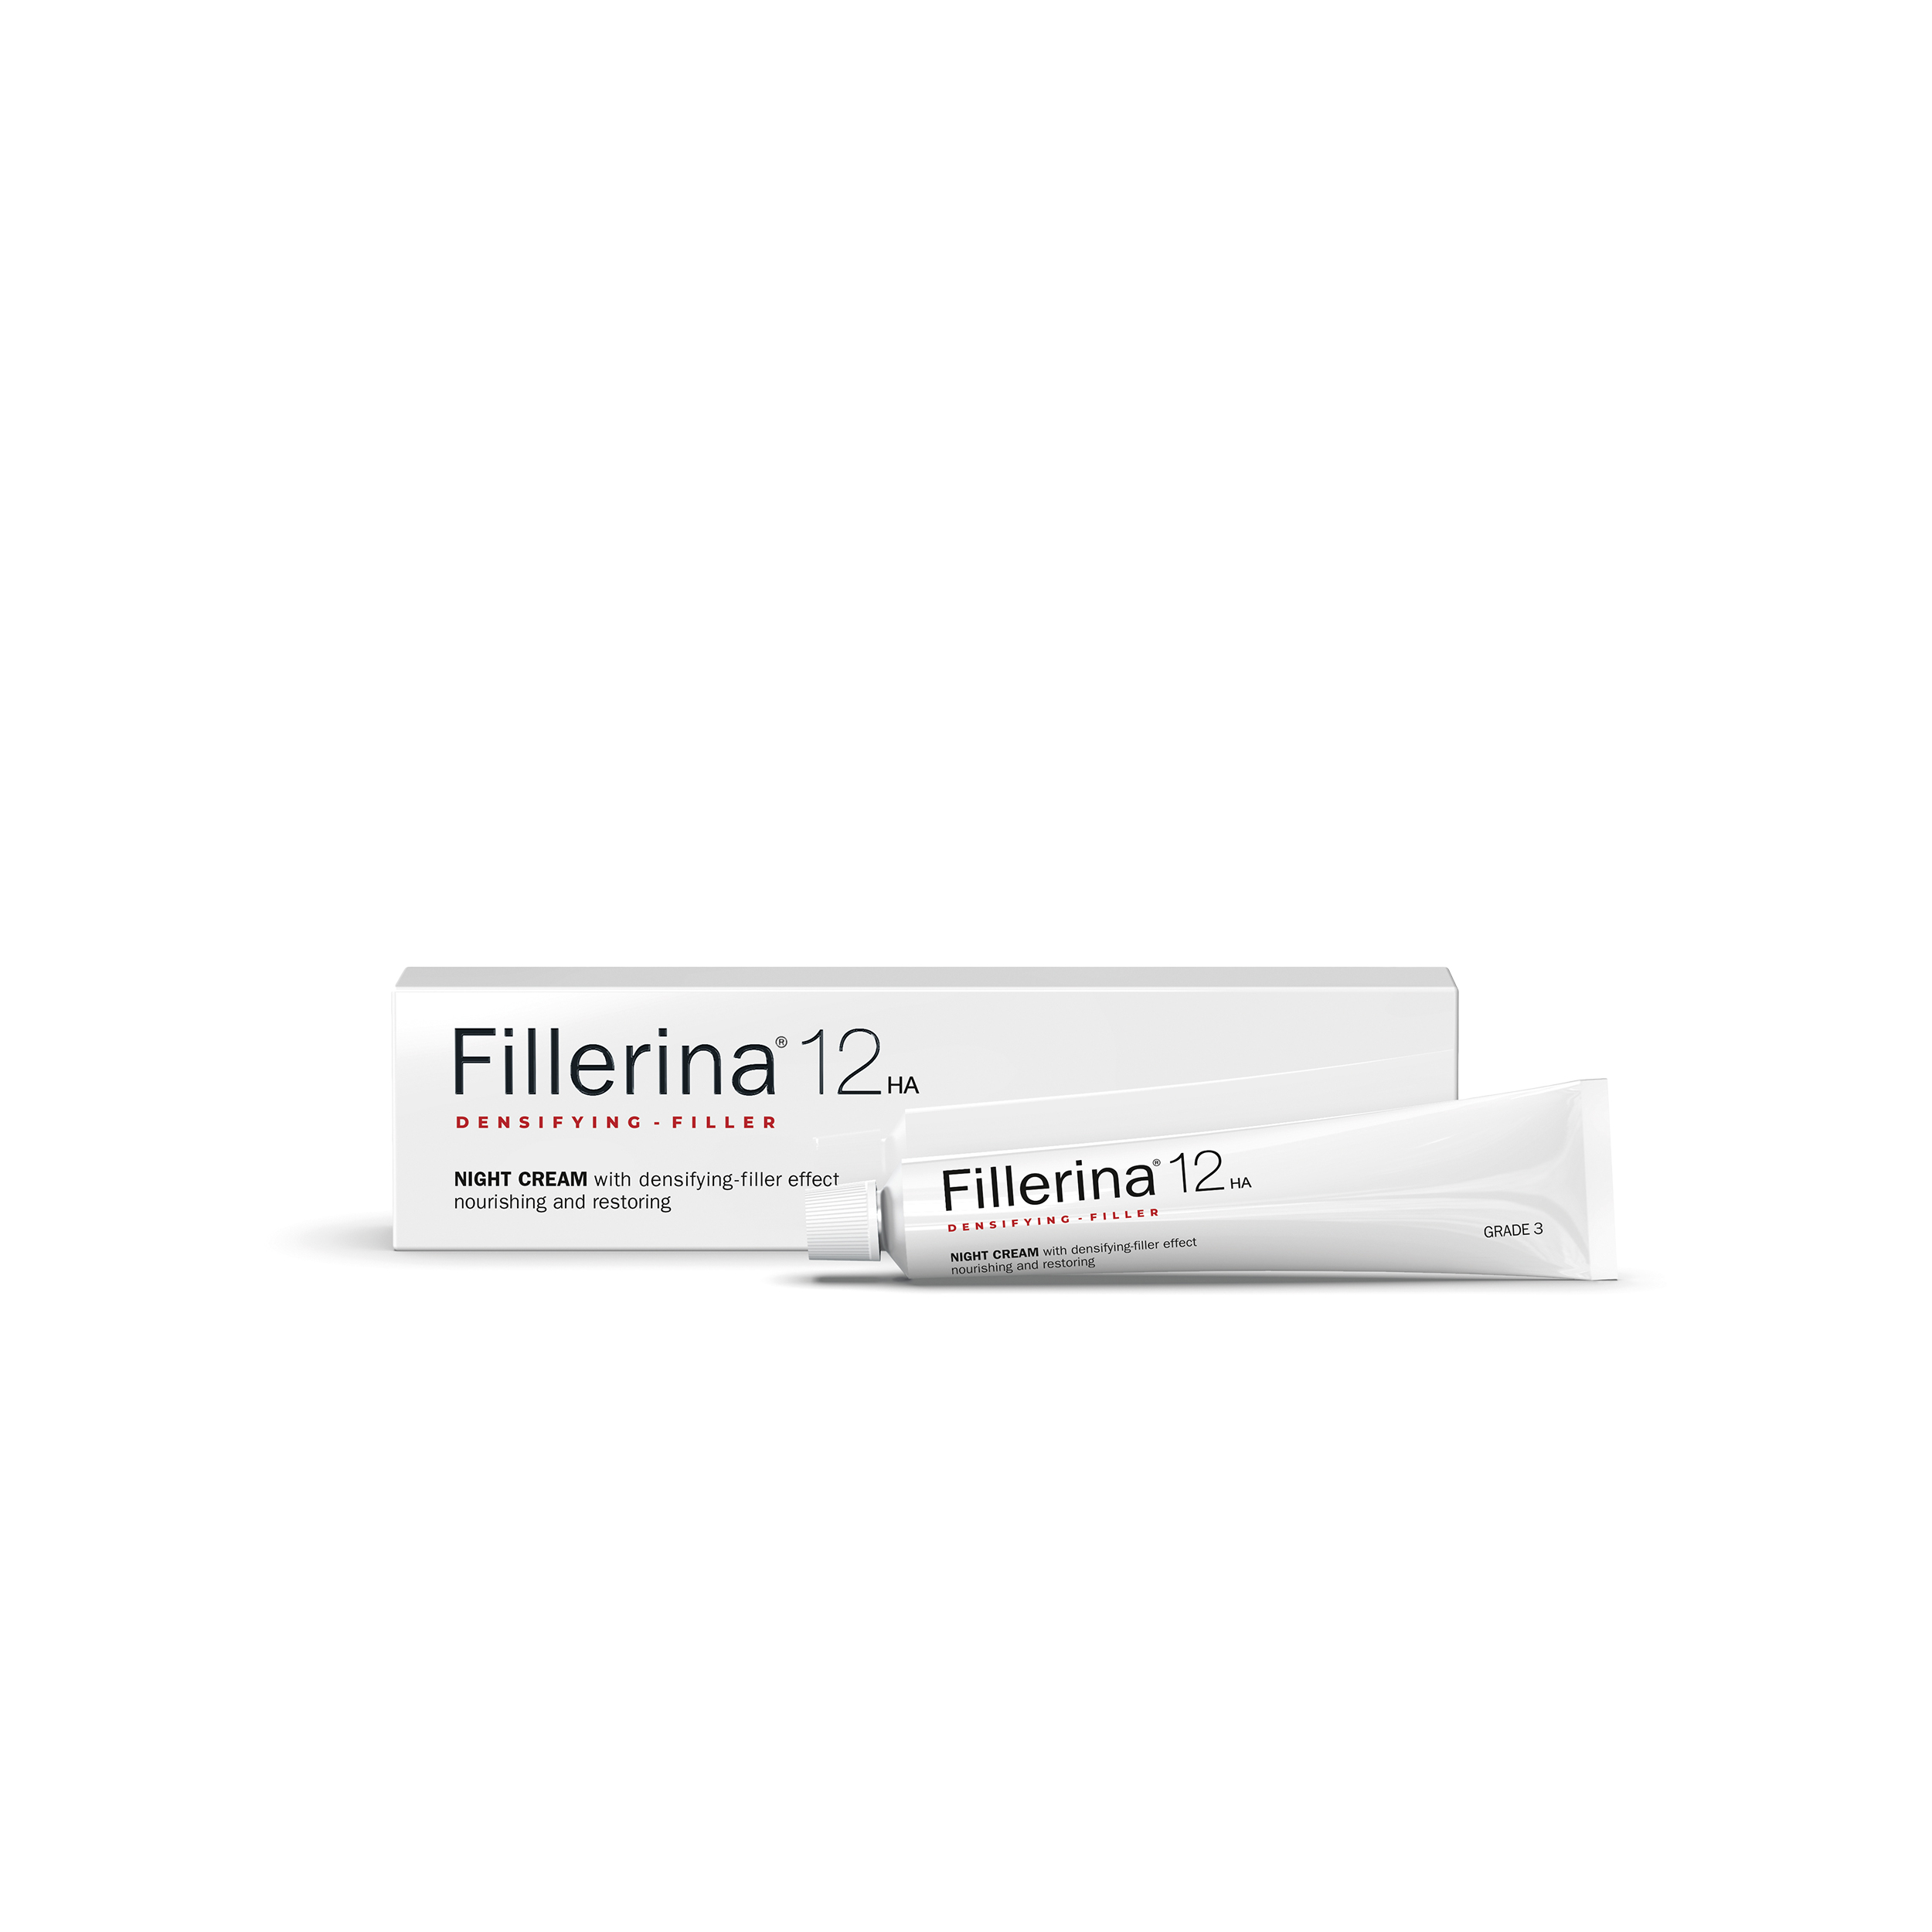 Fillerina Fillerina Восстанавливающий ночной крем для лица Fillerina 12 12HA Densifying-Filler, уровень 3 50 мл RU00828 - фото 1